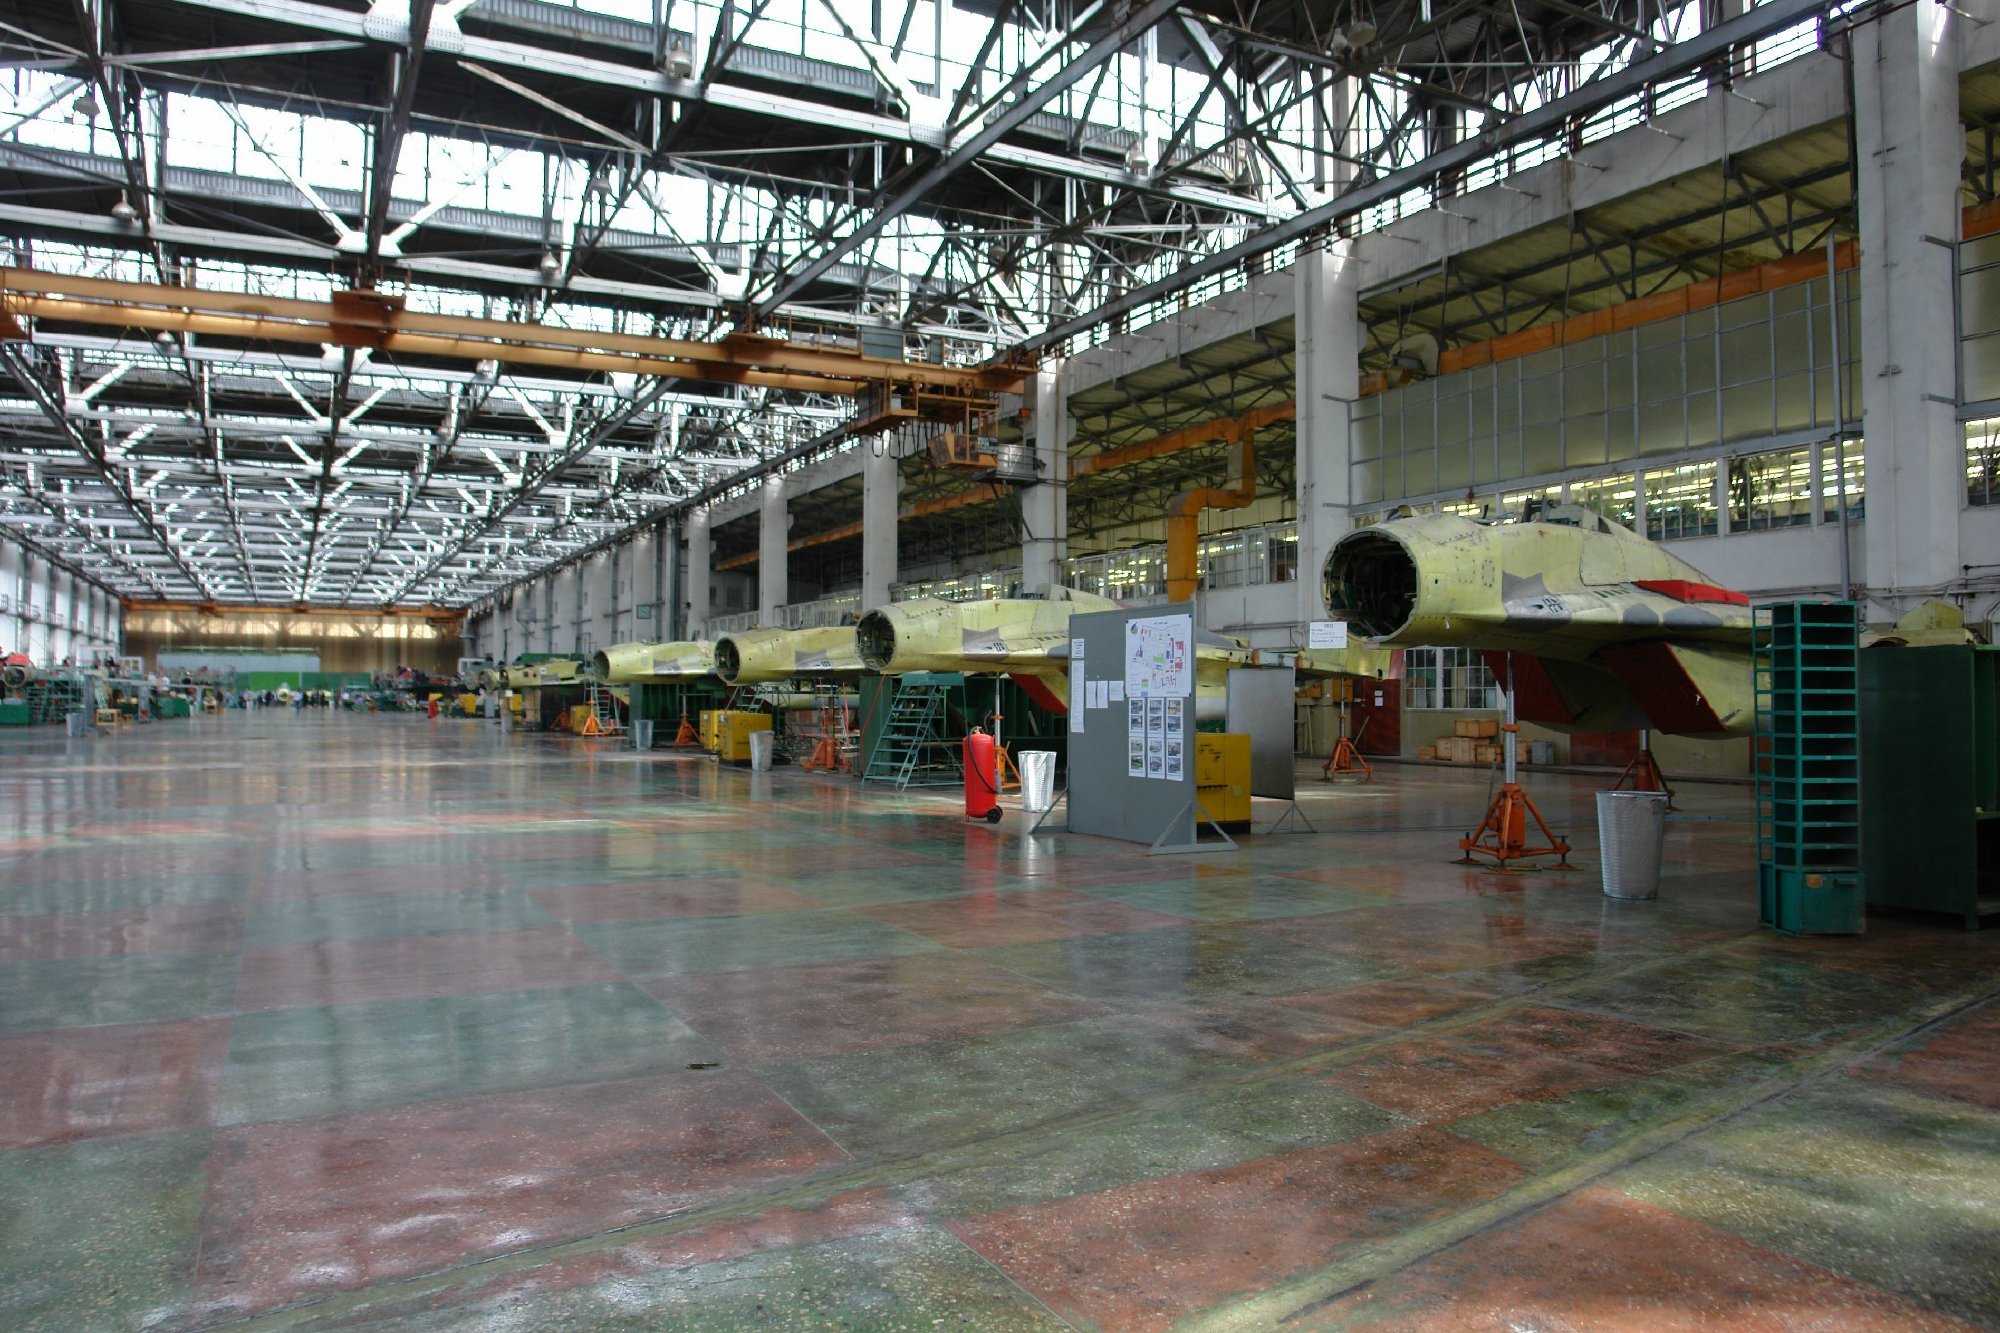 索科尔飞机制造厂,米格战机最后的总装基地,老旧设施堪比作坊